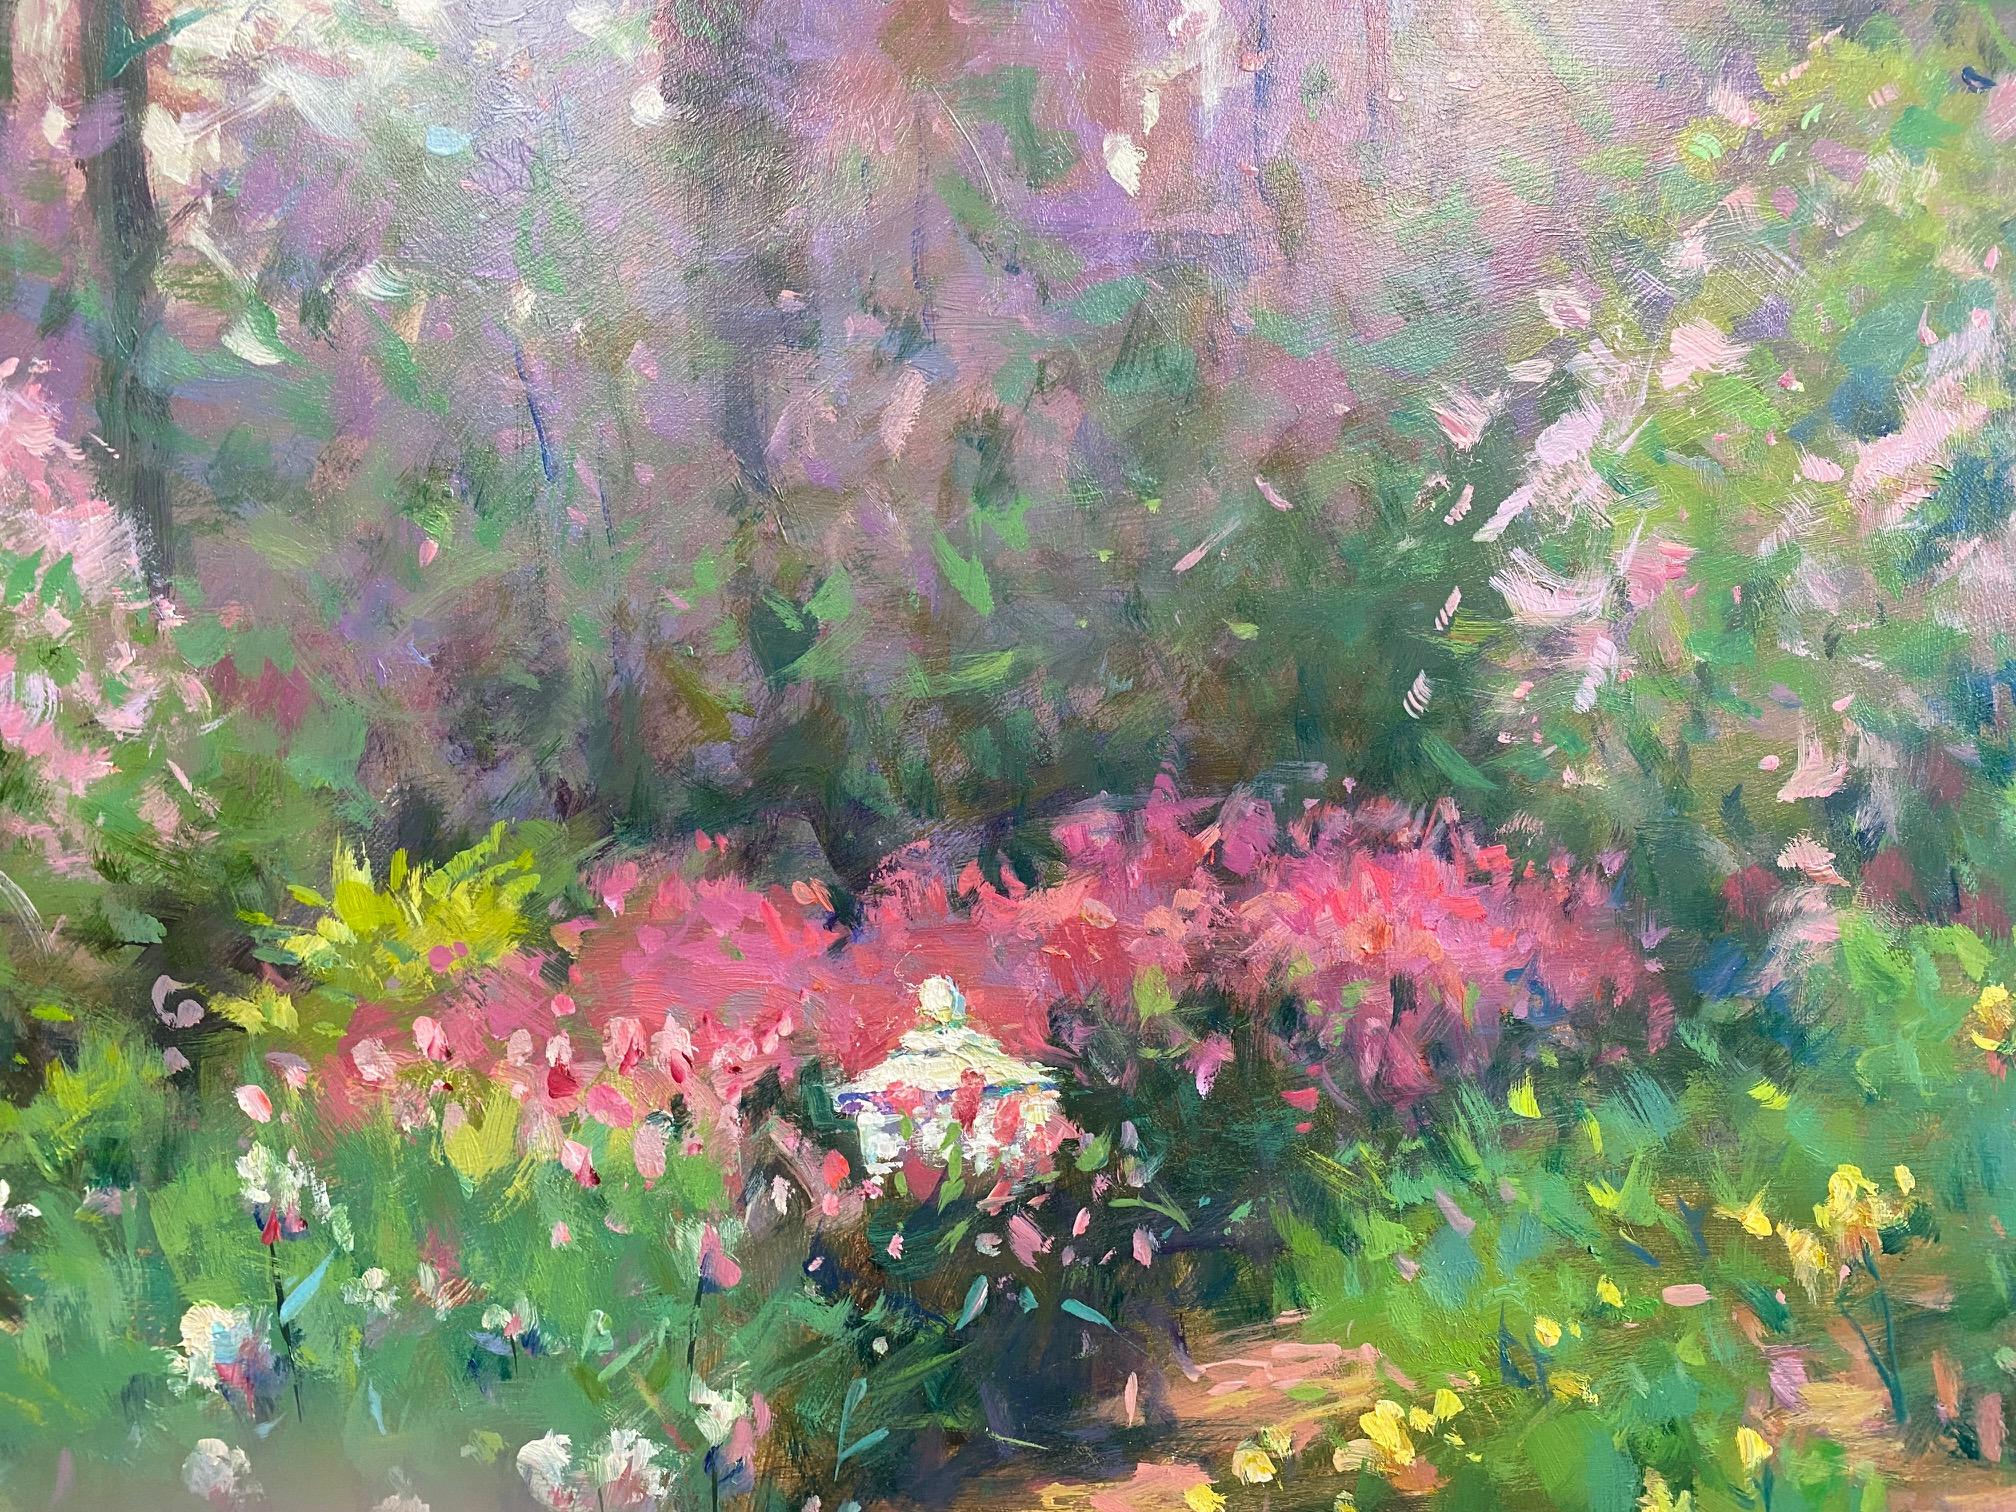 Forest at Winterthur Garden, original 20x24 impressionist floral landscape For Sale 1